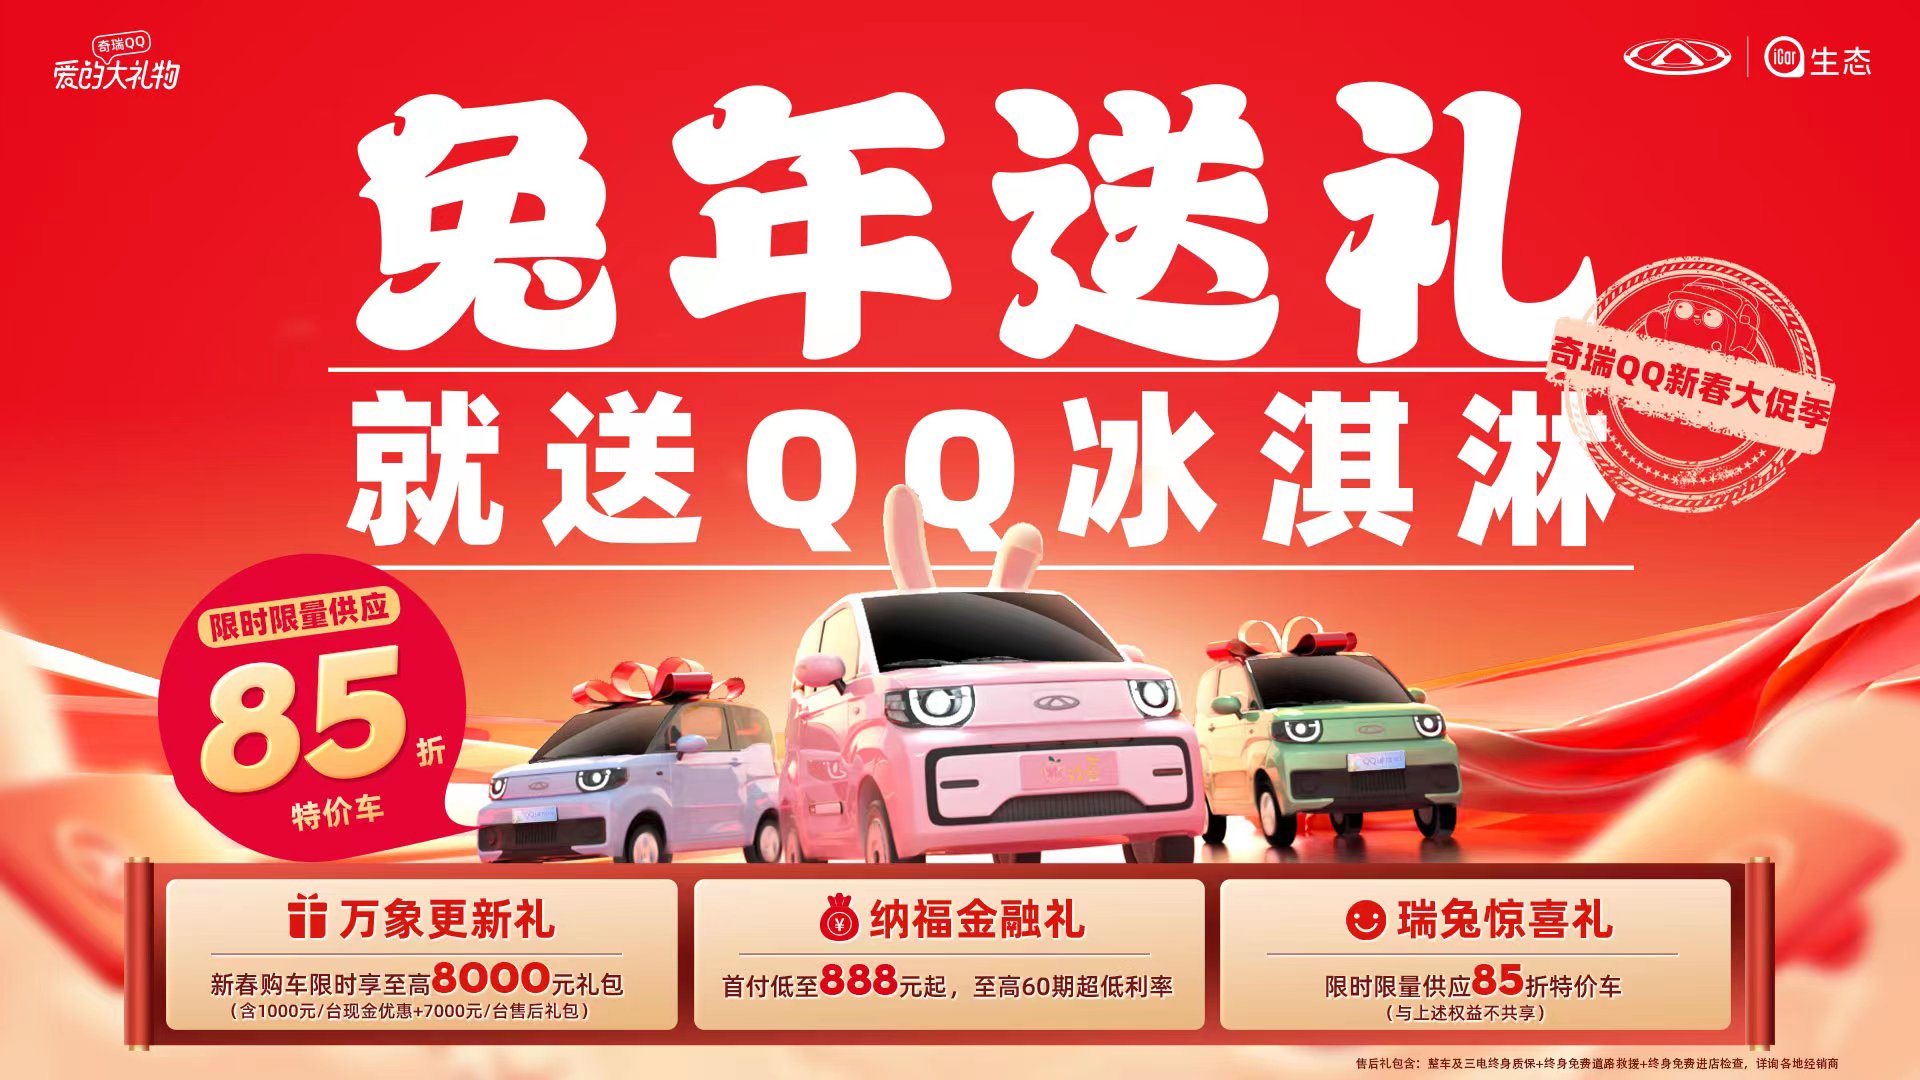 年终福利火热来袭 购QQ冰淇淋限时限量供应85折特价车